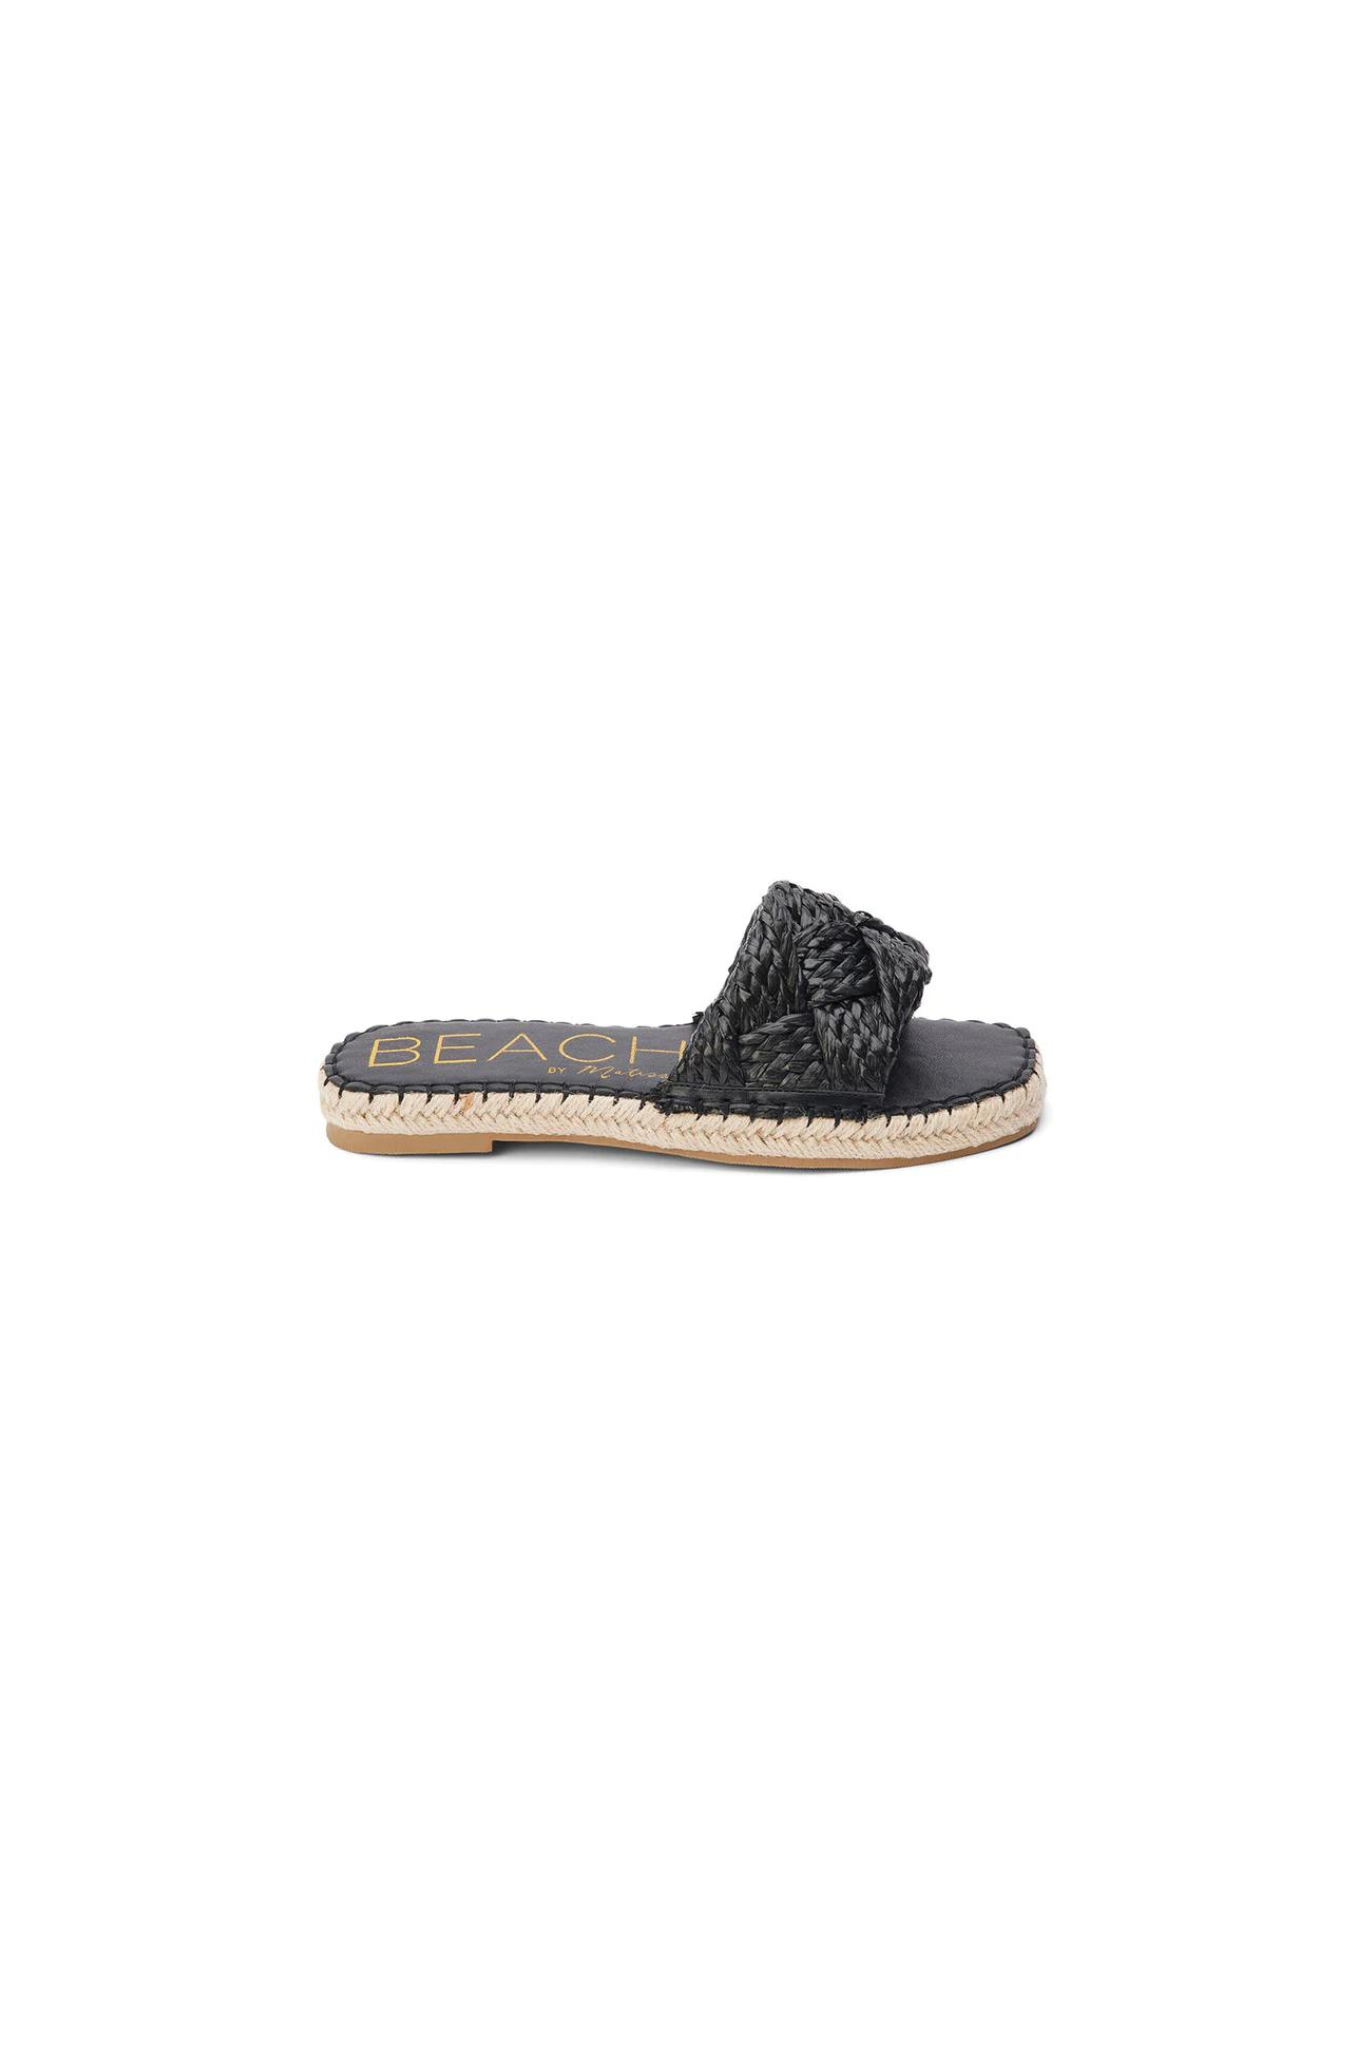 Matisse Beach | Black Ivy Sandals | Sweetest Stitch Online Boutique